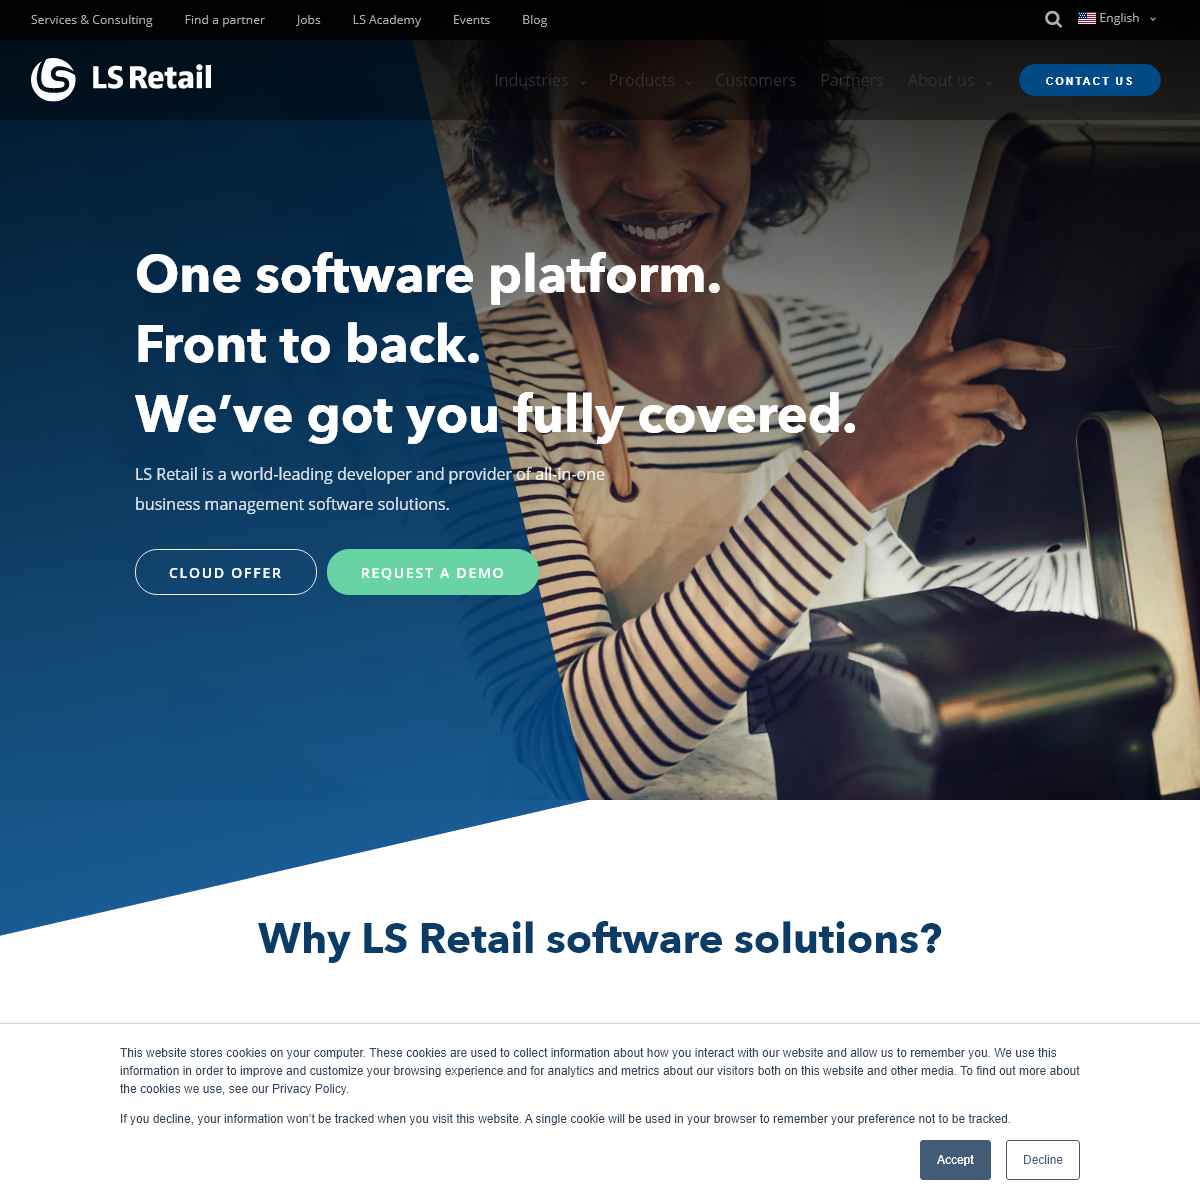 A complete backup of lsretail.com